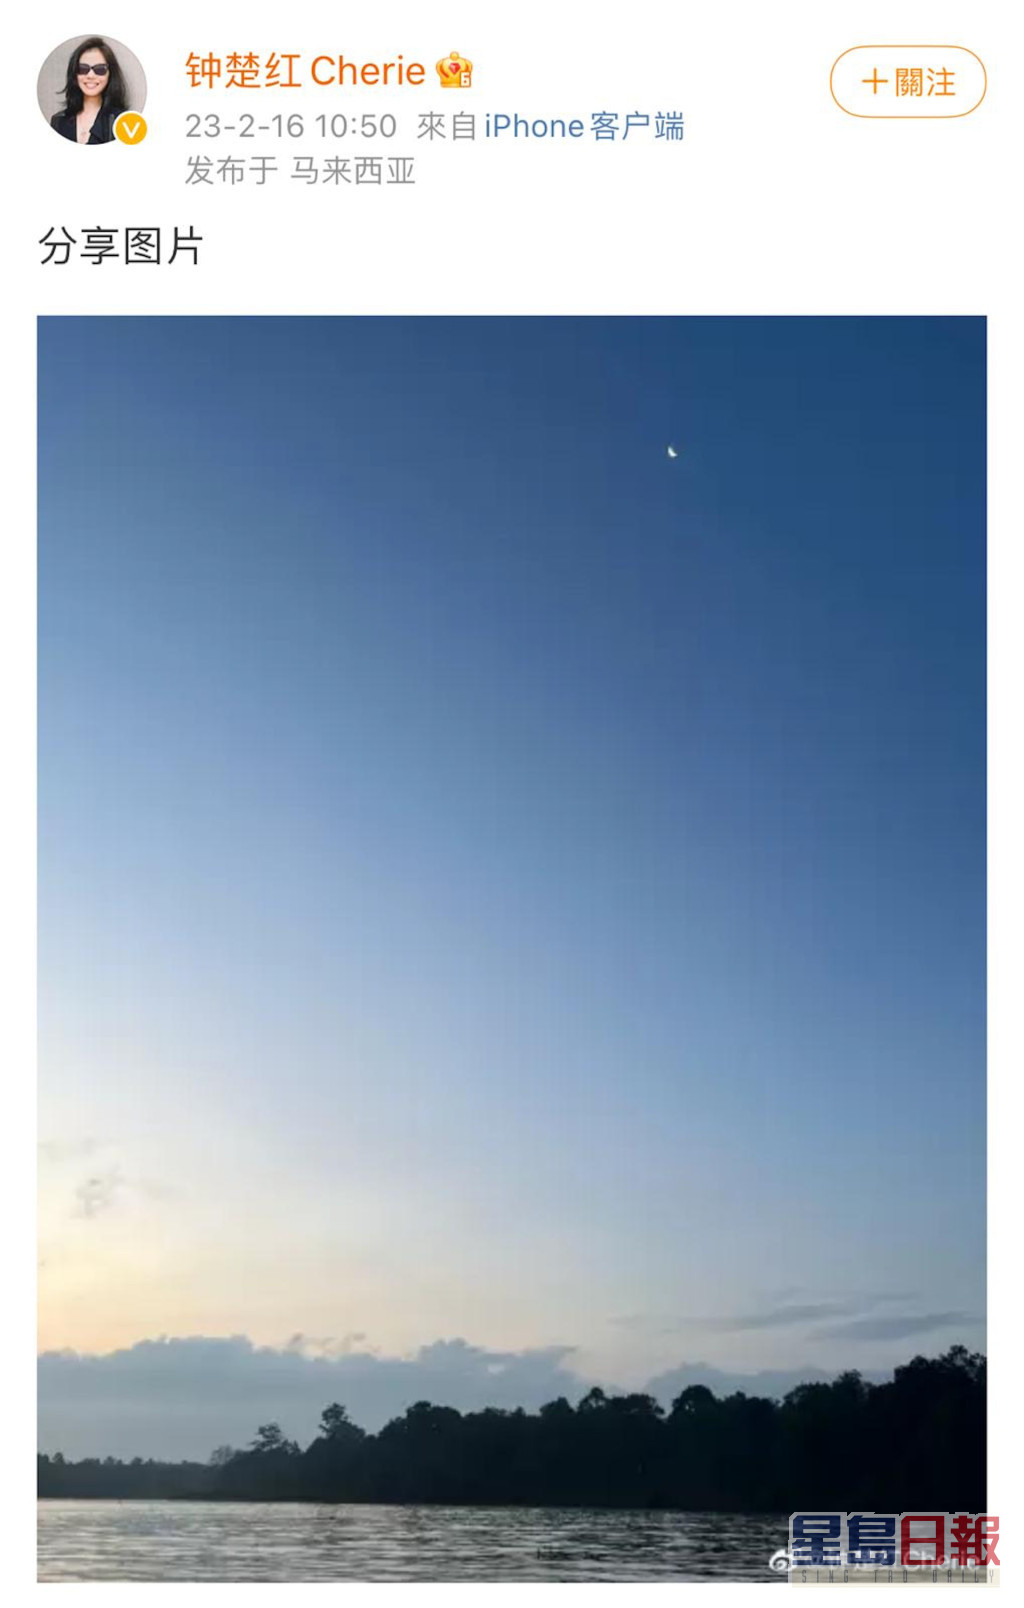 鍾楚紅於本月16日生日正日晒風景照，打卡地點曝露了她正身處馬來西亞。